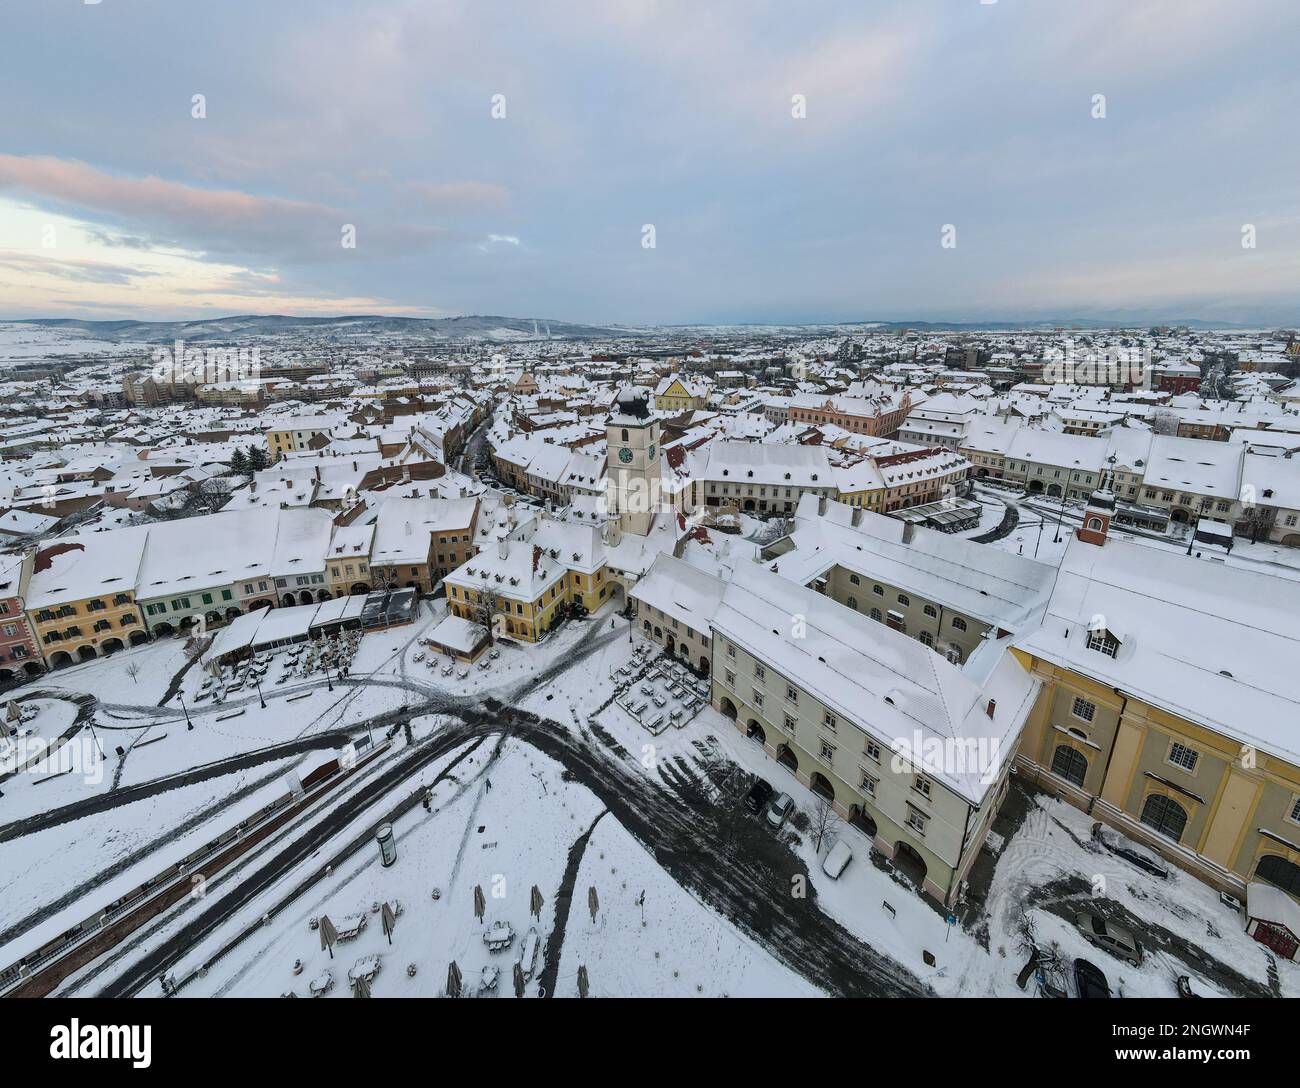 Vue panoramique sur le centre-ville historique de Sibiu, Roumanie au coucher du soleil. Photographie de drone de paysage urbain du dessus contenant le petit carré et le t Banque D'Images